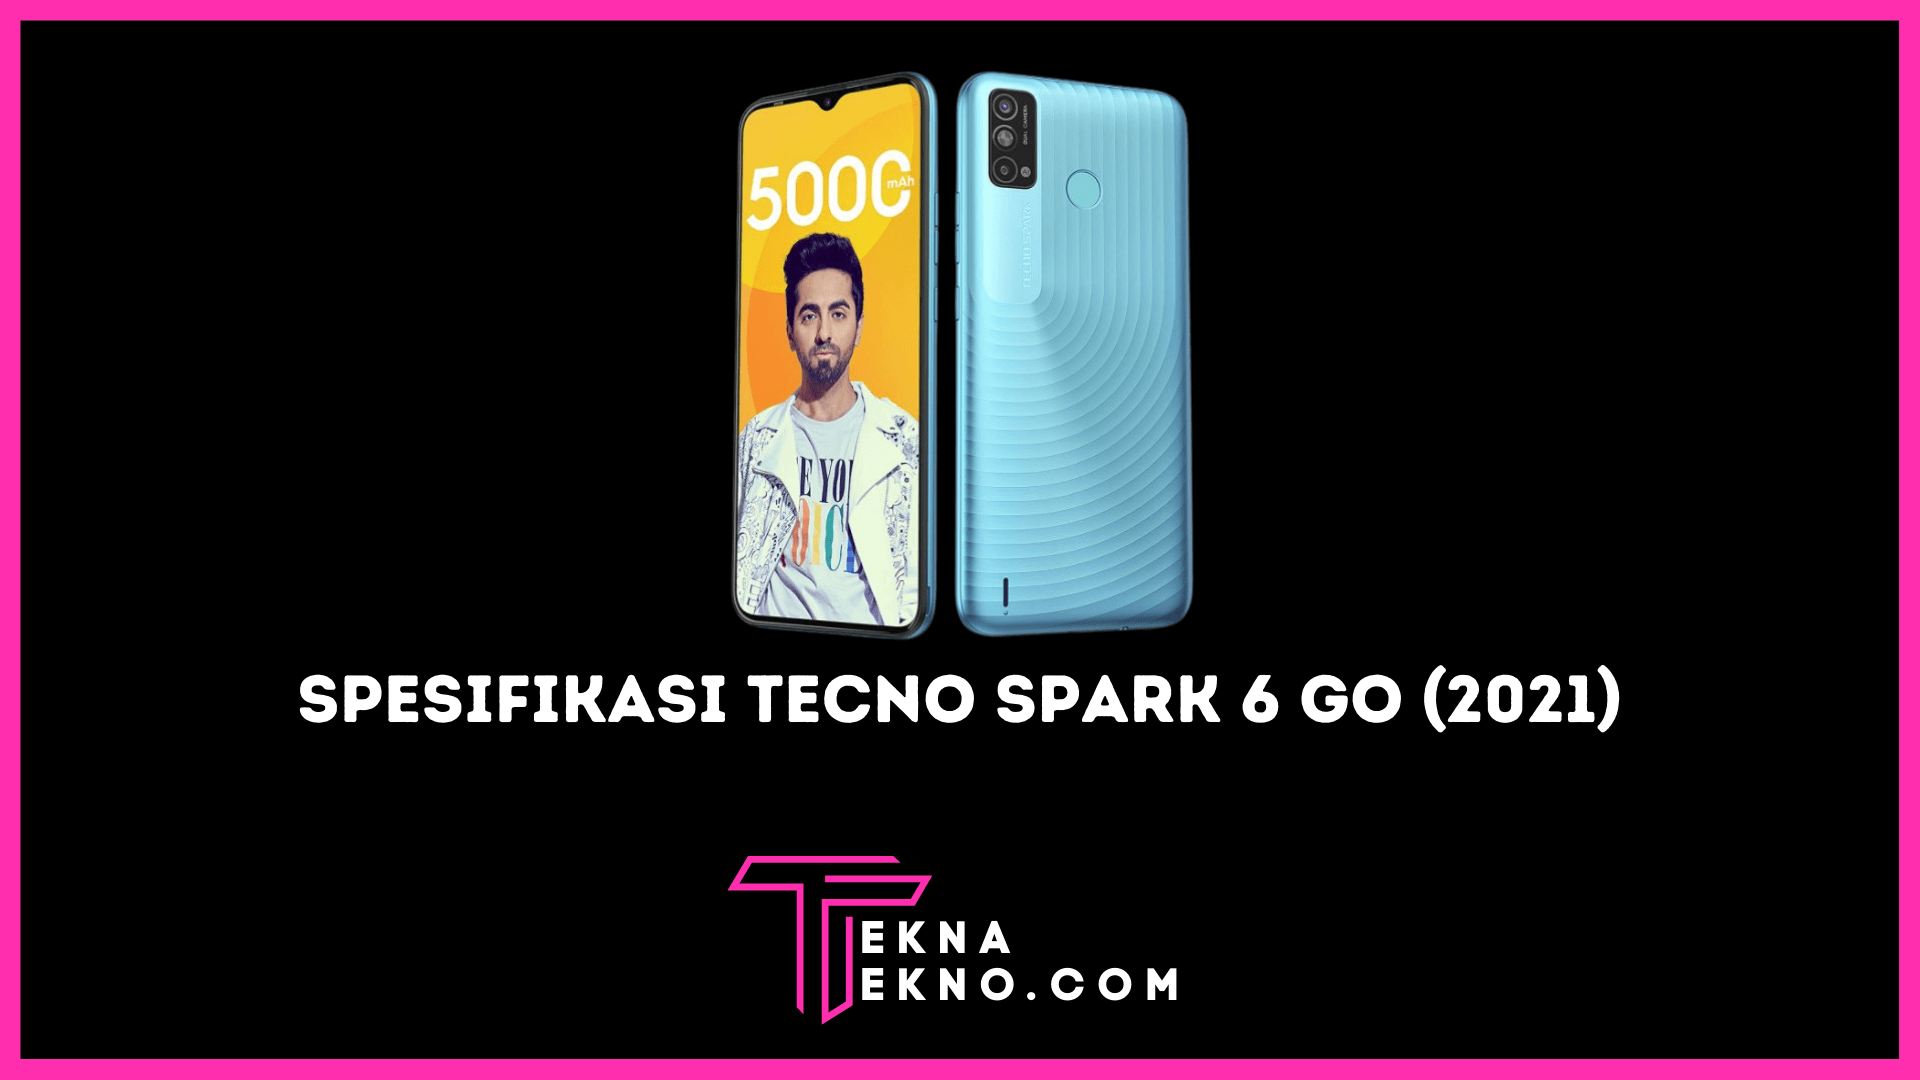 Tecno Spark 6 Go 2021 Bawa Spesifikasi Unggulan